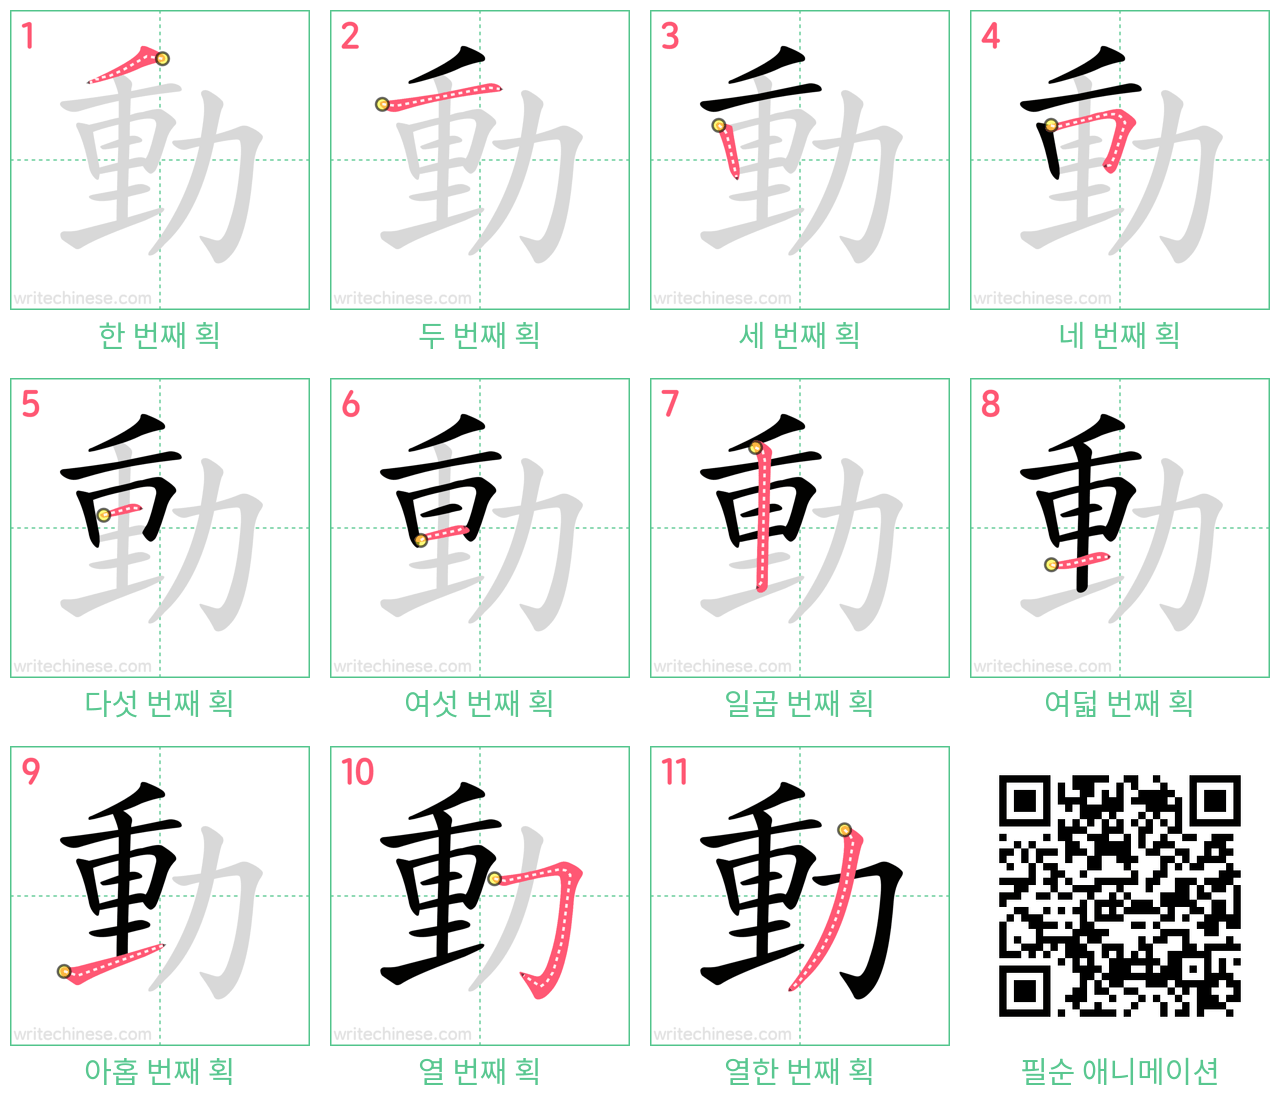 動 step-by-step stroke order diagrams